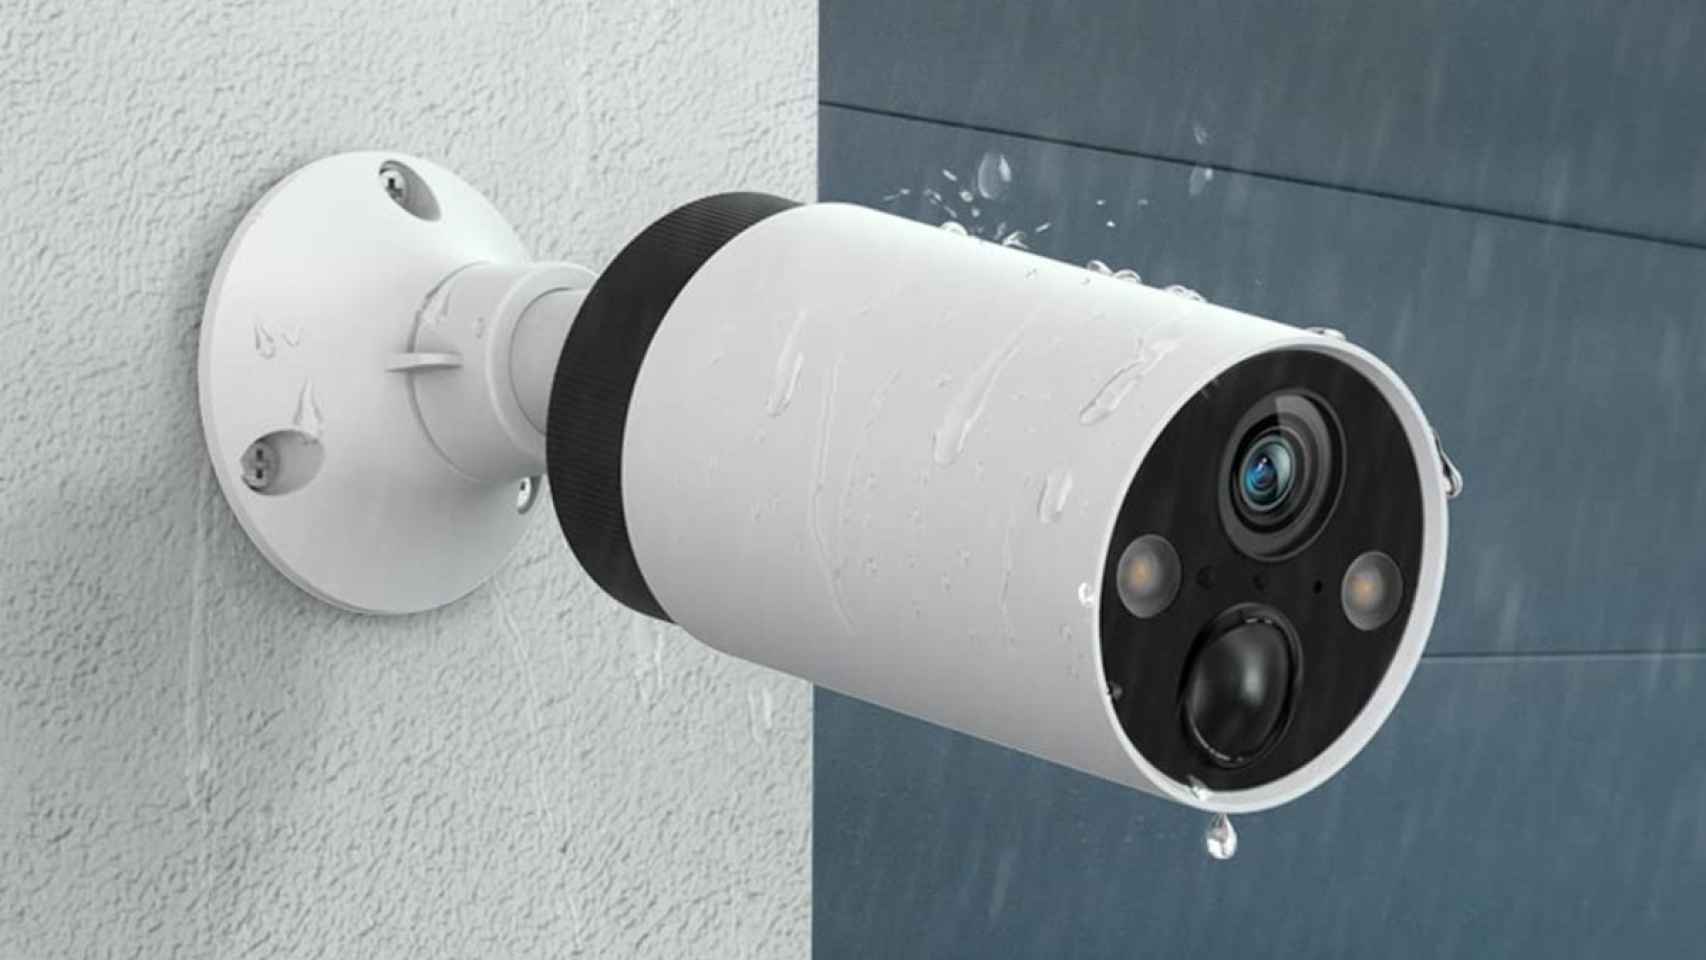 Mantené seguro tu hogar con las nuevas cámaras de seguridad Tapo! Cámara de  Seguridad Domo TP-Link Tapo C200: • Detección de…